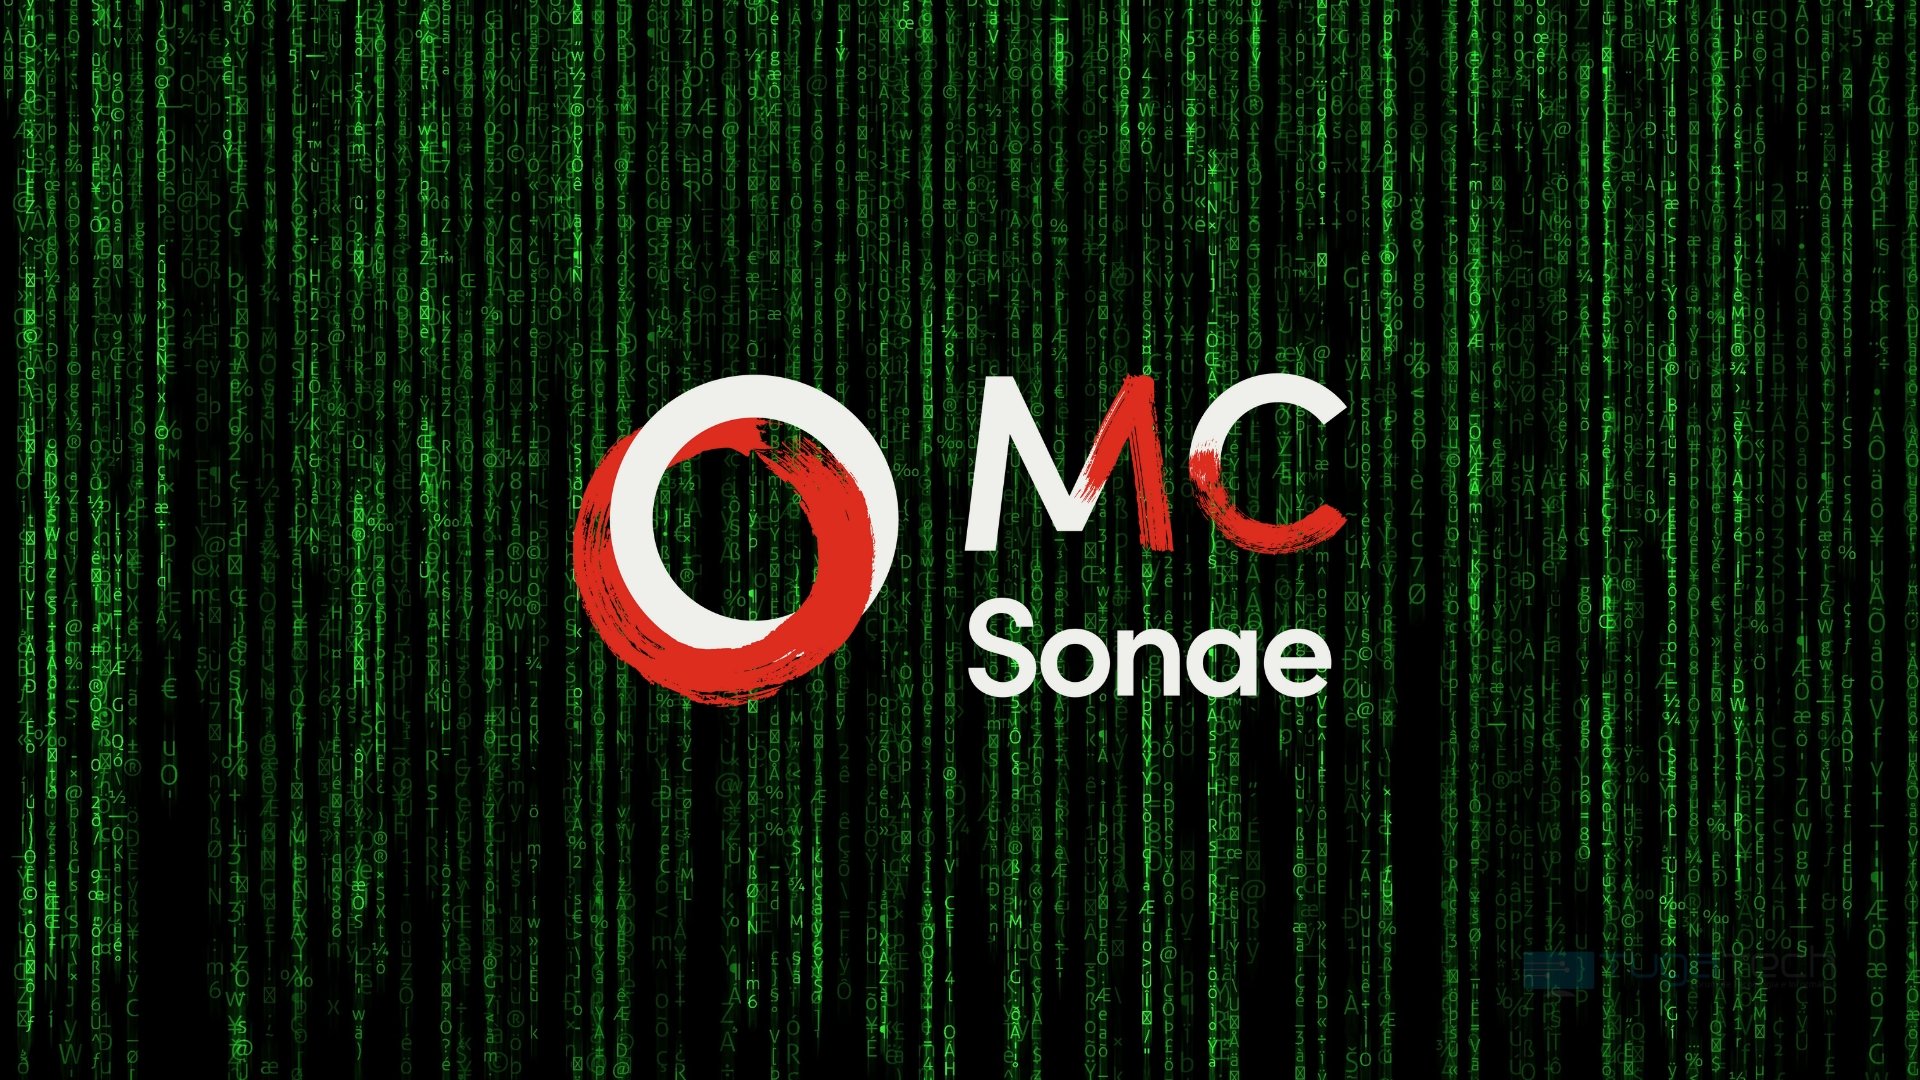 MC Sonae